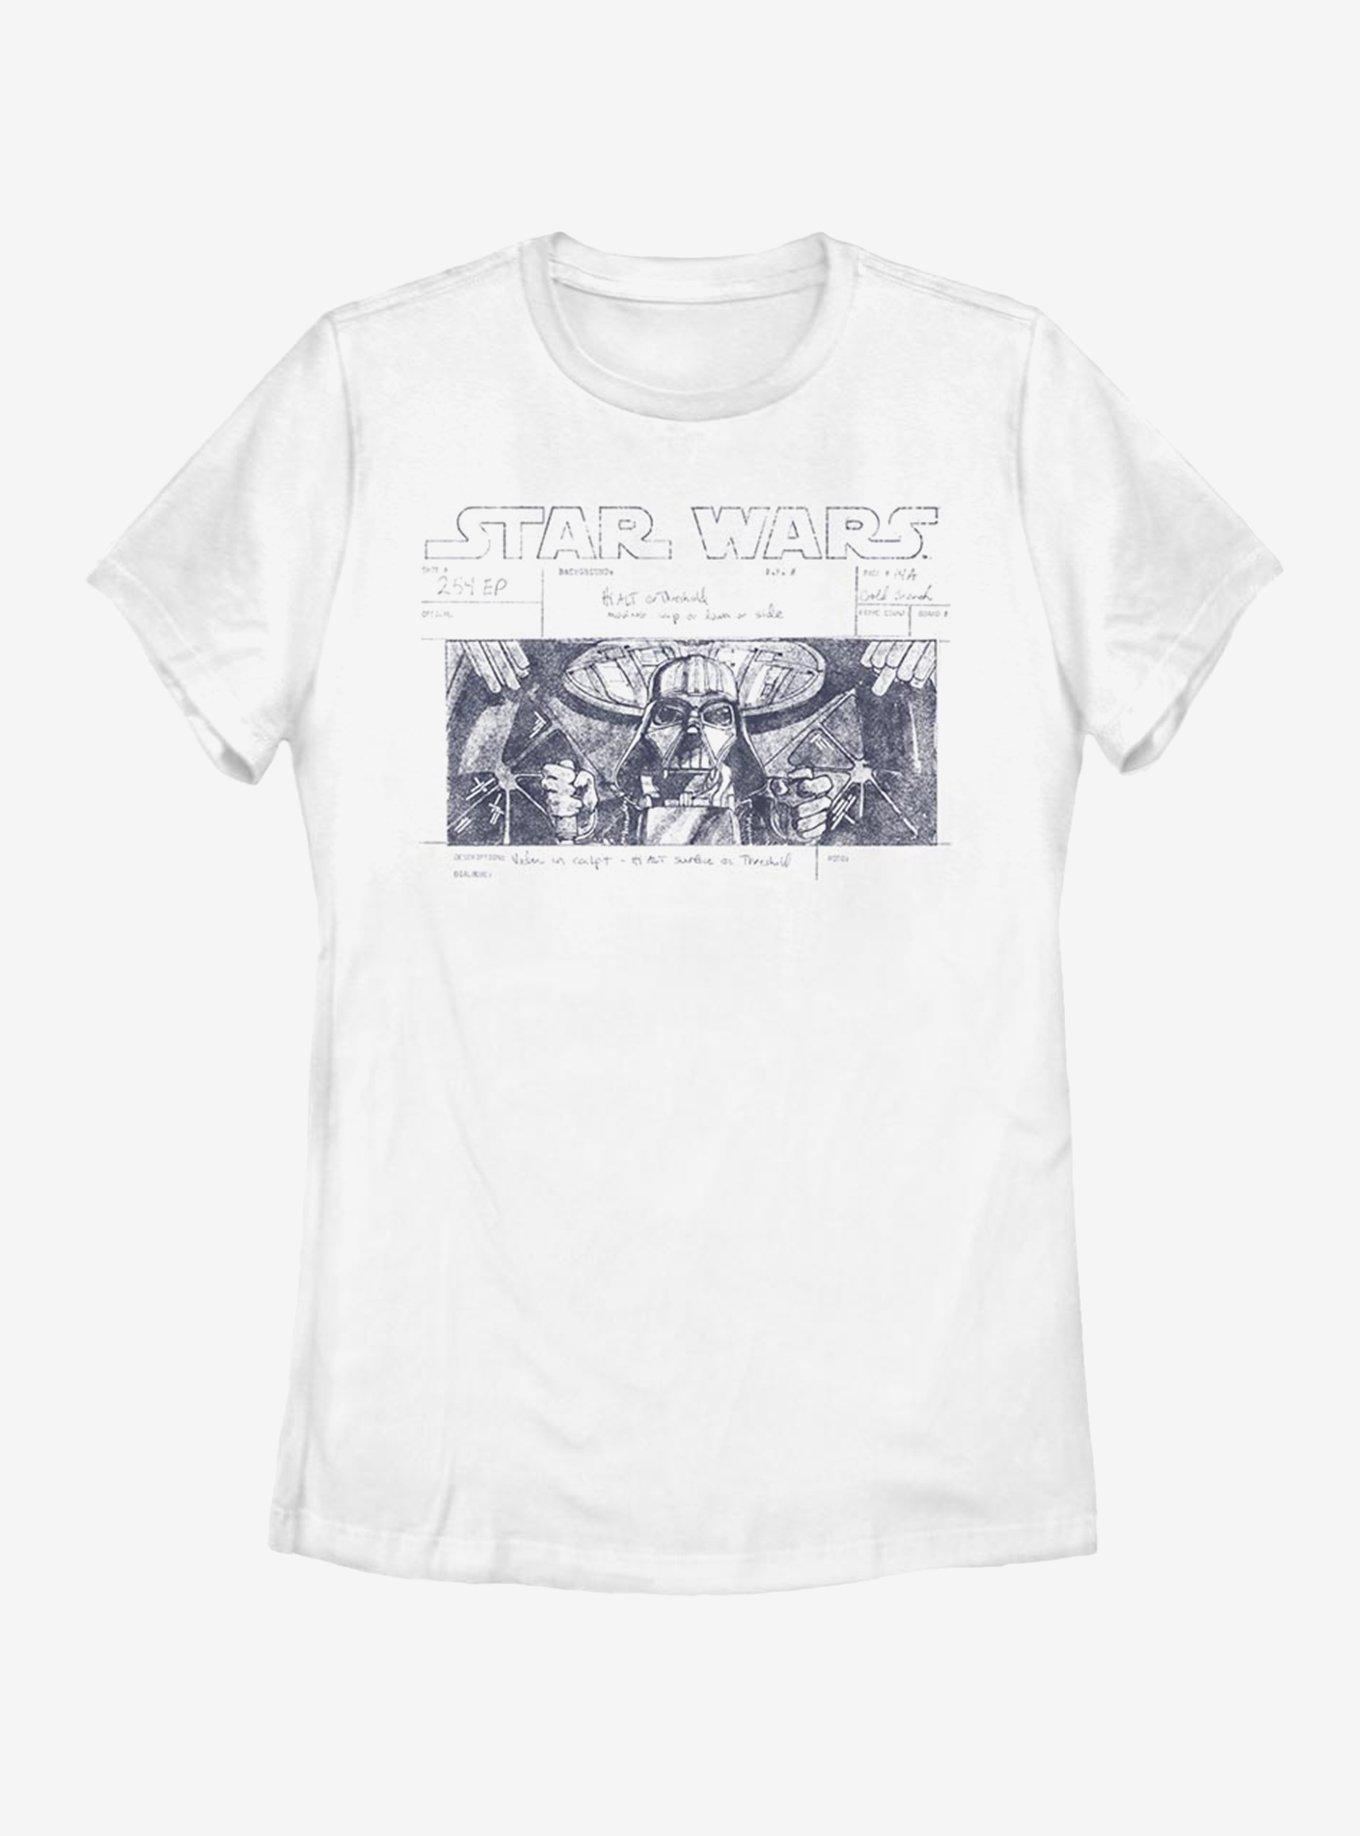 Star Wars Death Star Run Womens T-Shirt, WHITE, hi-res